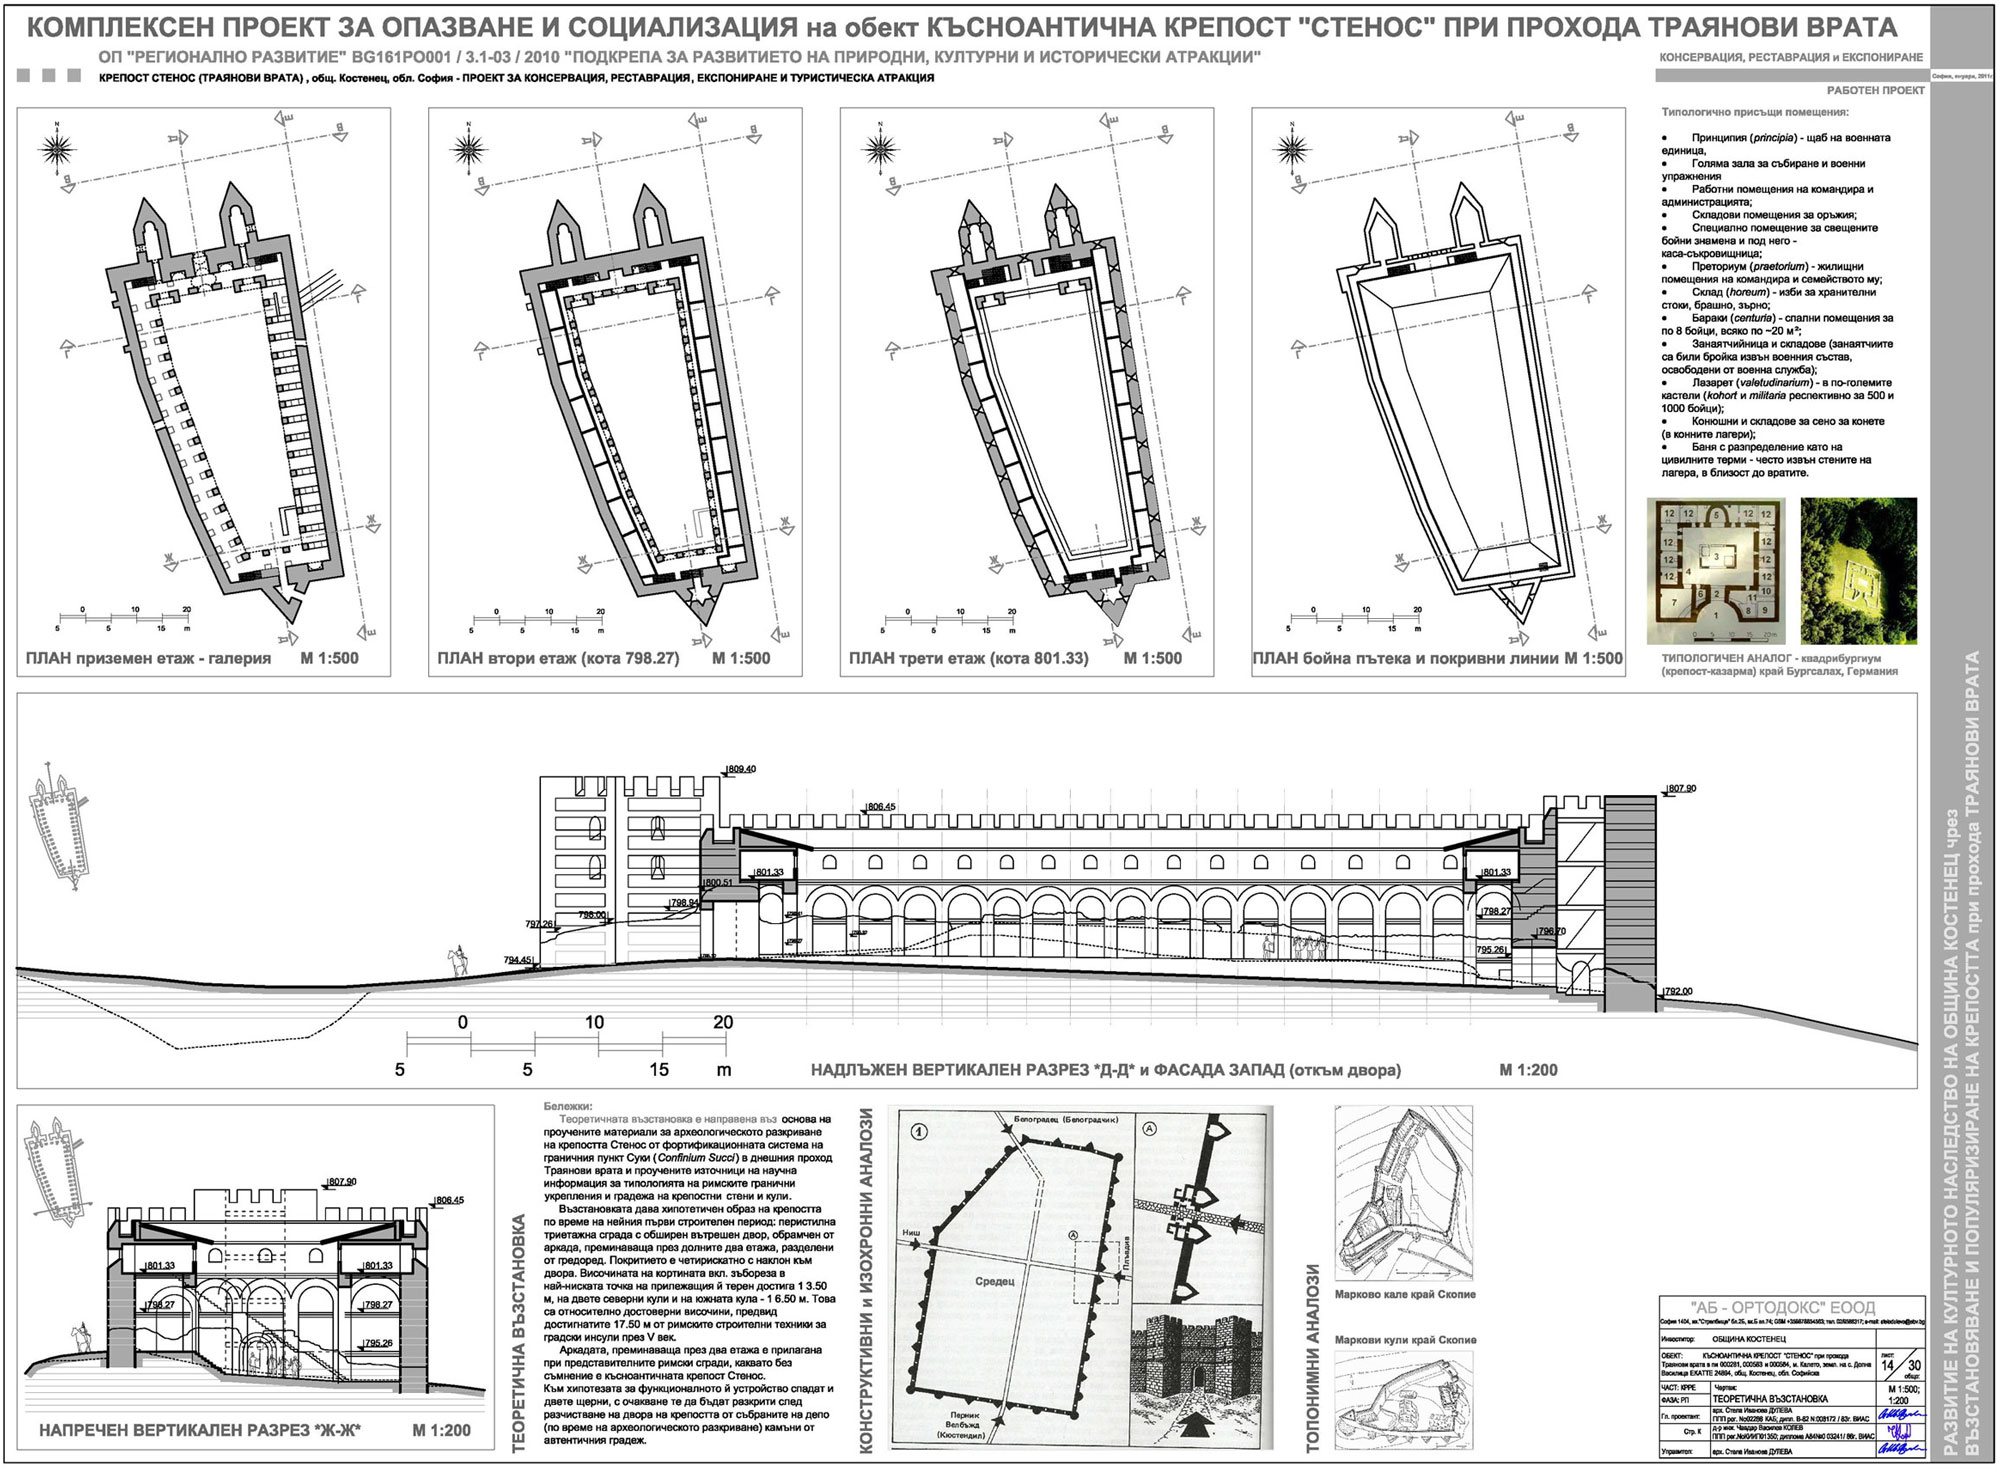 Приложение 1: Комплексен проект за опазване и социализация на обект Късноантична крепост "Стенос" при прохода Траянови врата